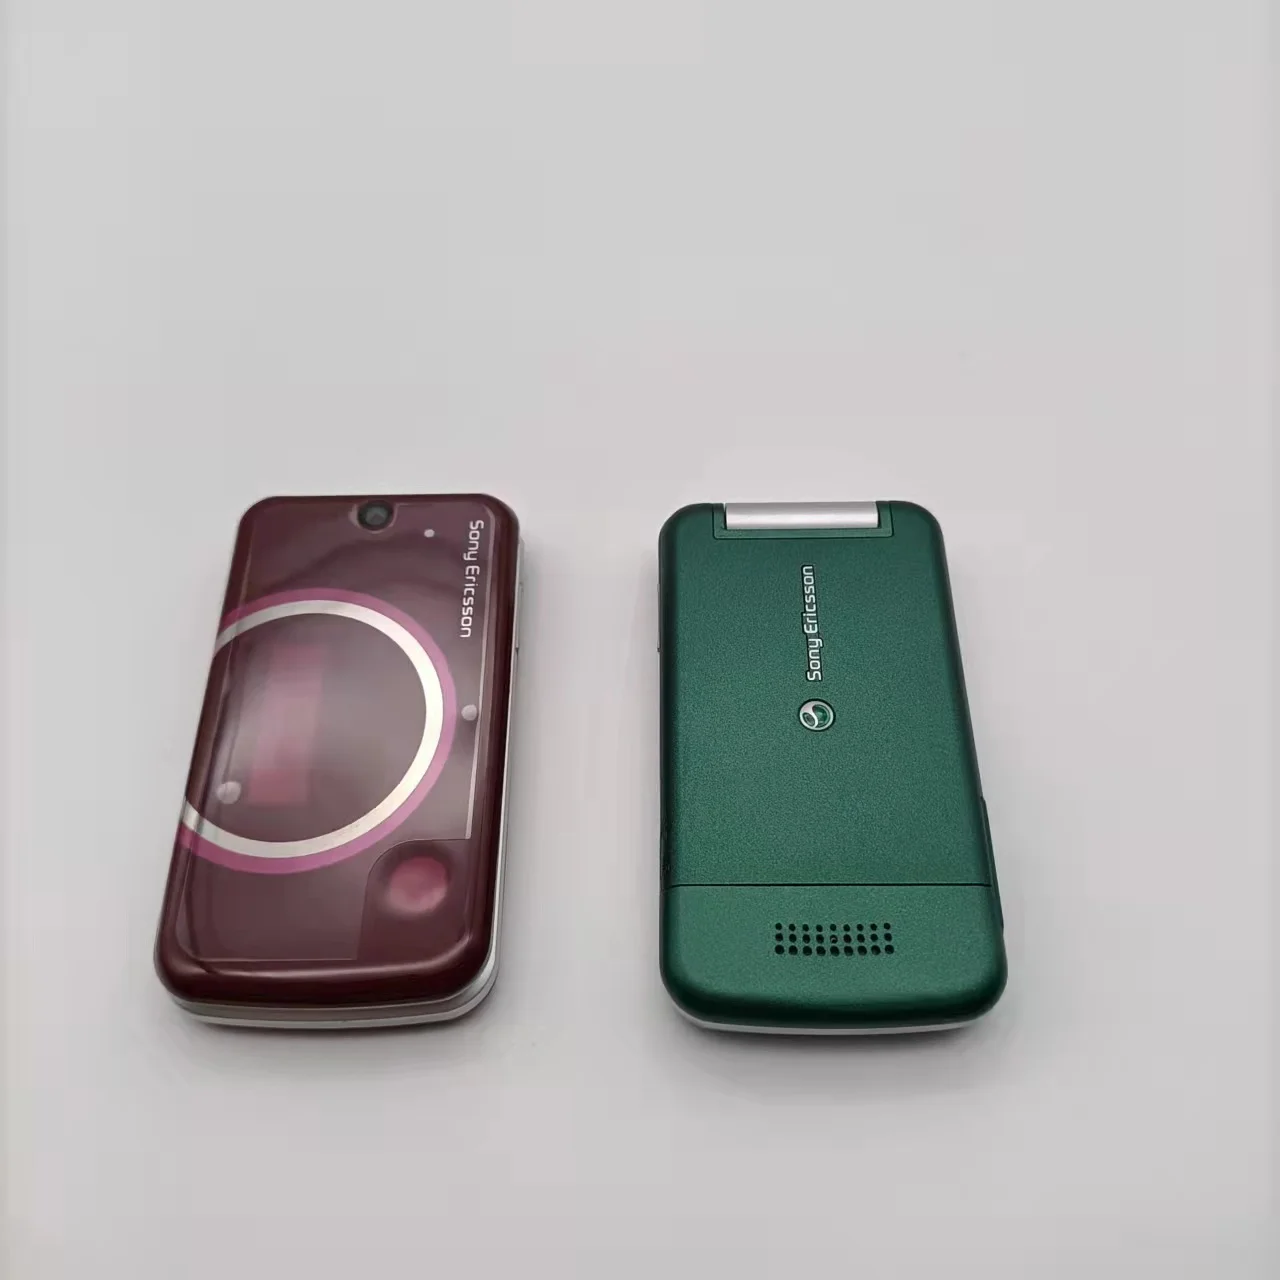 Sony Ericsson T707 разблокирован 100 МБ Оперативной памяти, 3-мегапиксельная камера, дешевый мобильный телефон с бесплатной доставкой 2